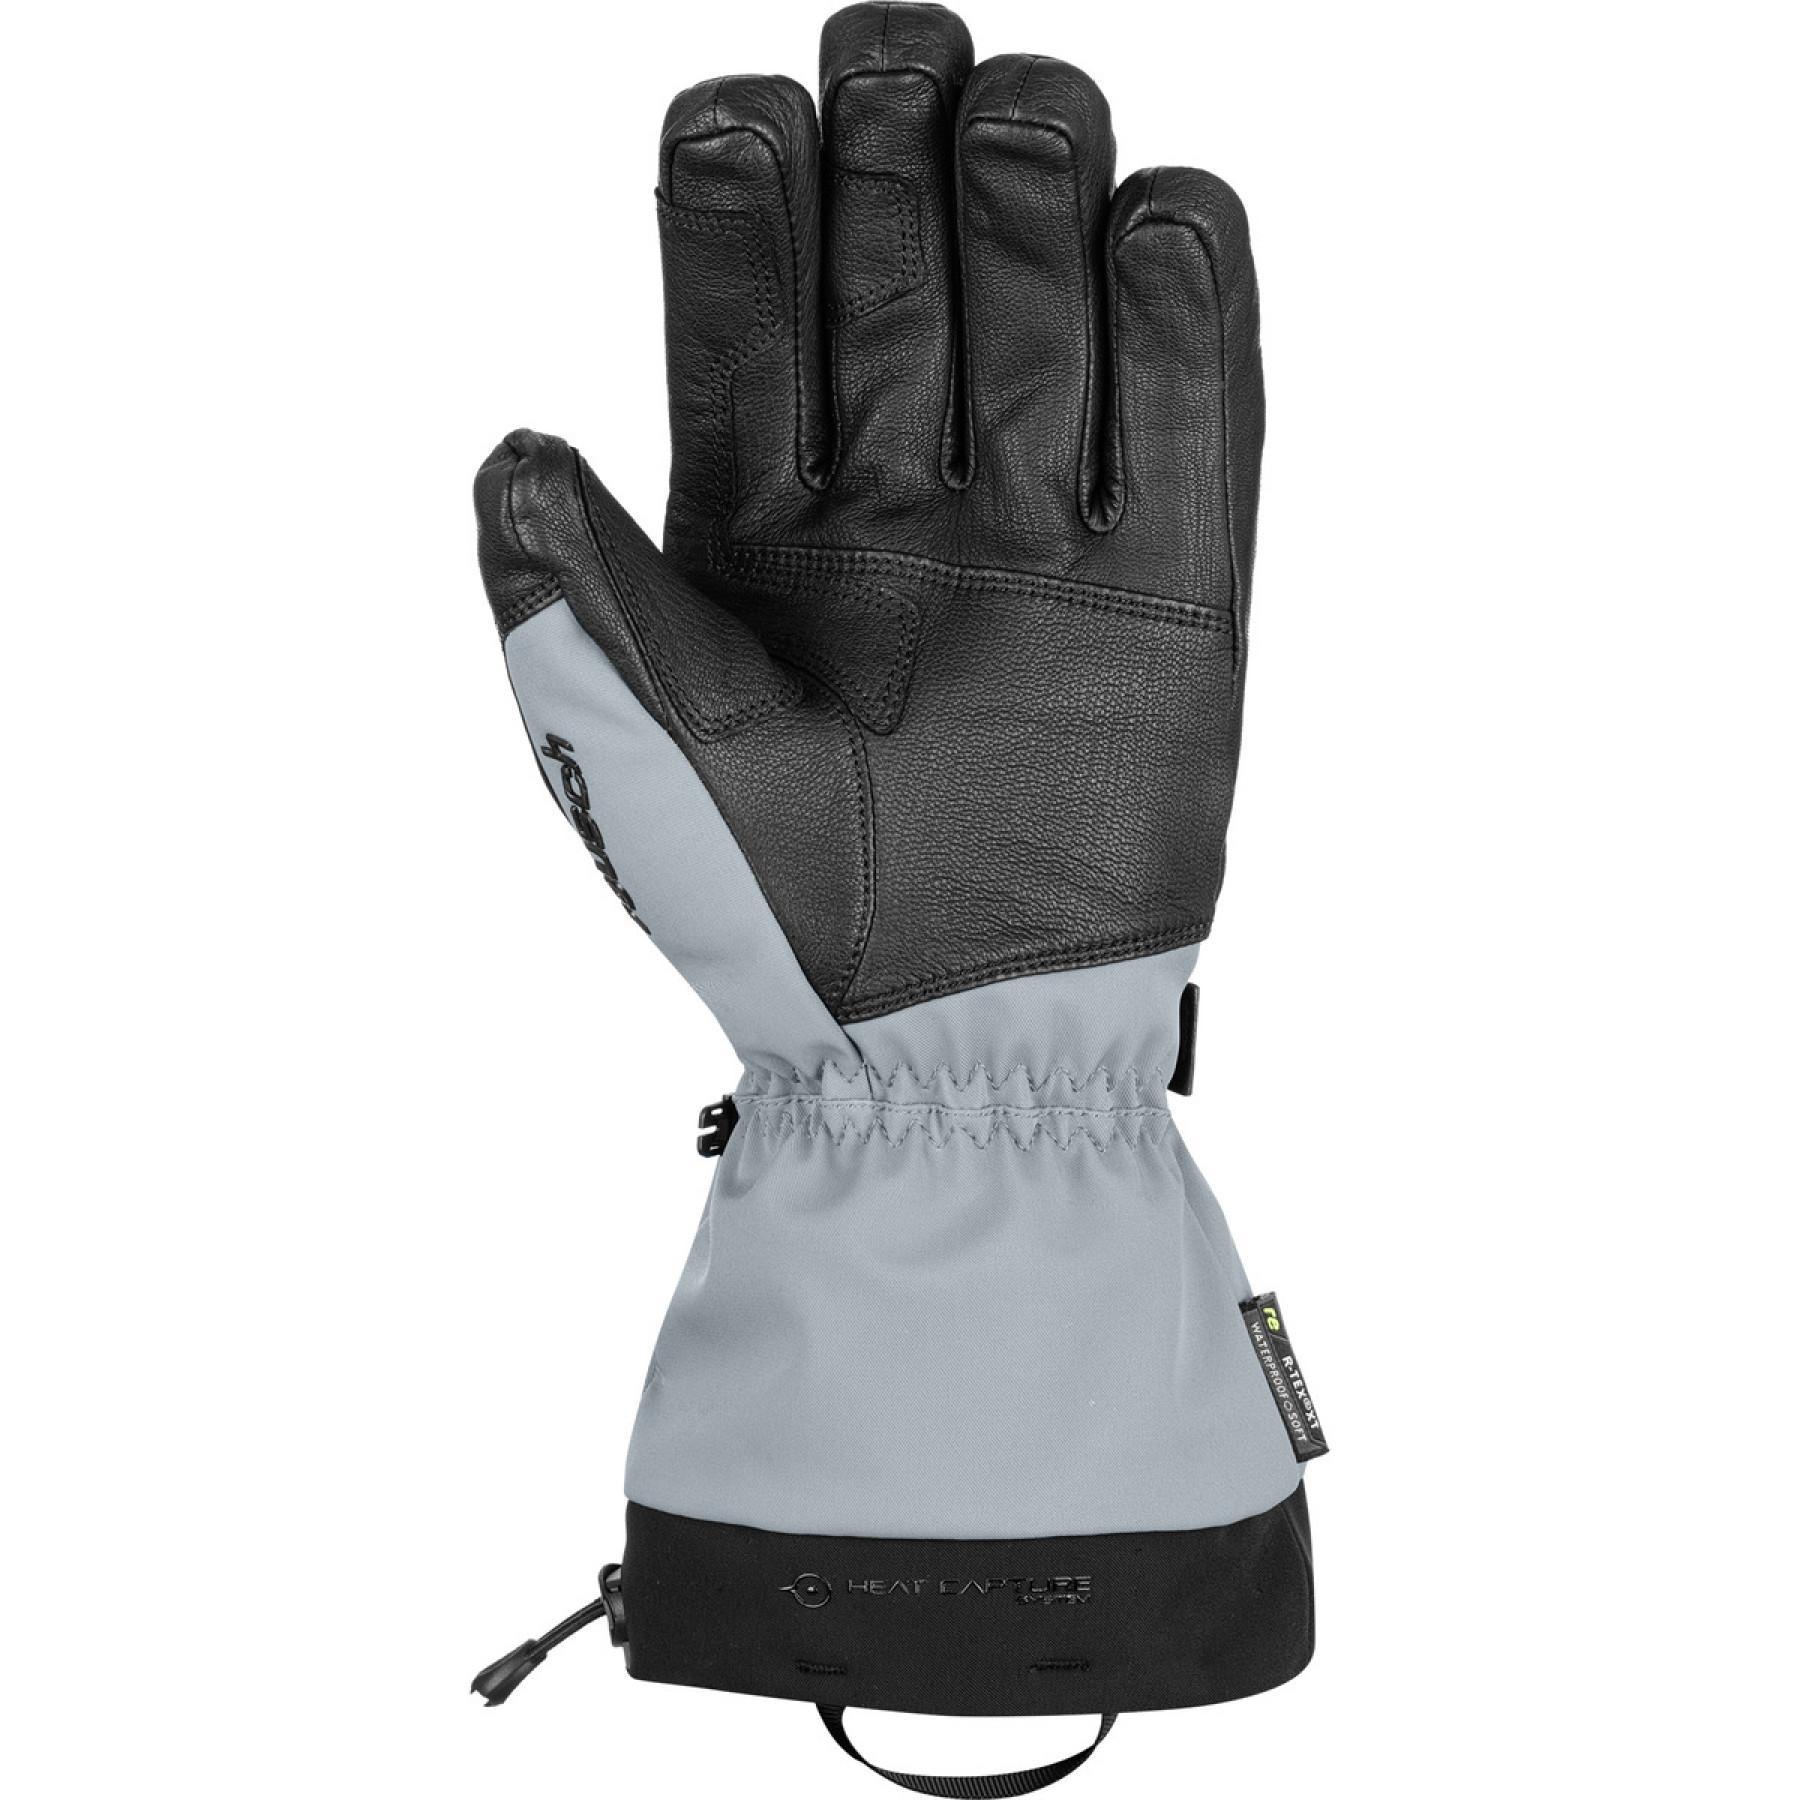 Gants de ski Reusch Explorer Pro R-tex® Pcr Xt Lc